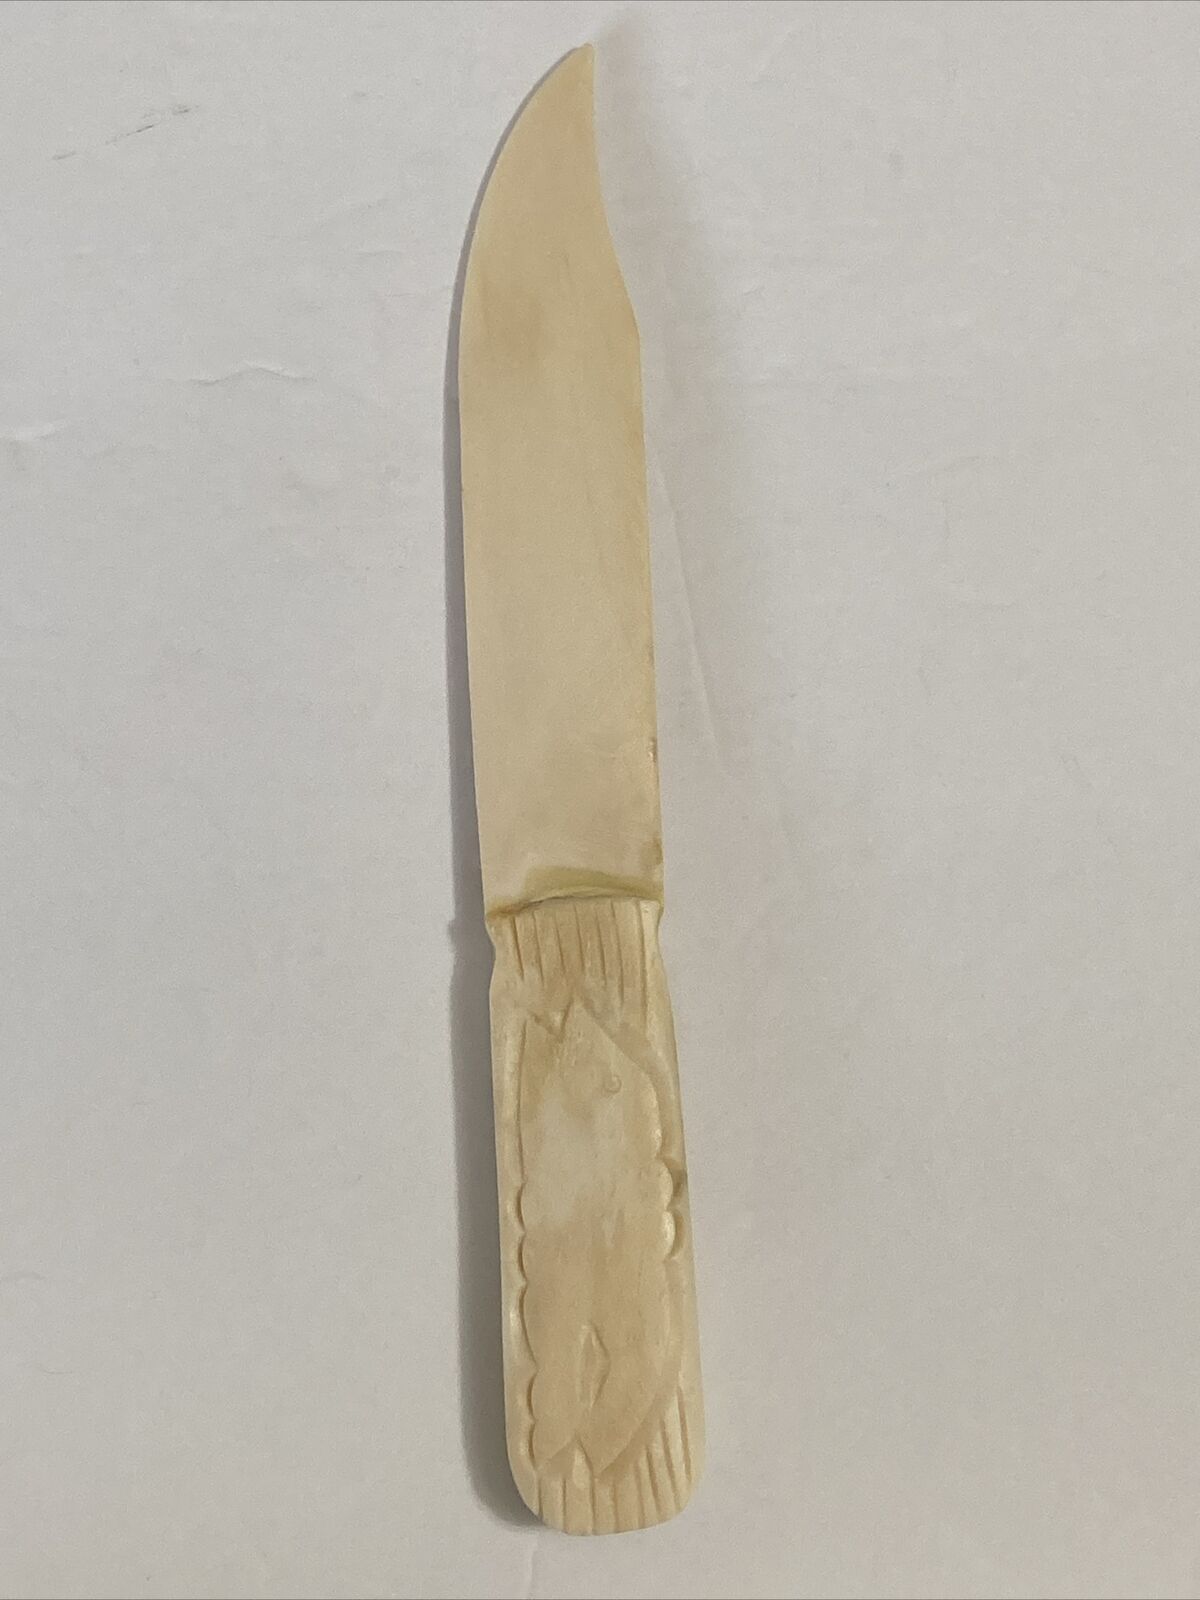 Vintage Estate Sale Find-Carved Knife/Letter Opener-Hand Carved(See Pictures)